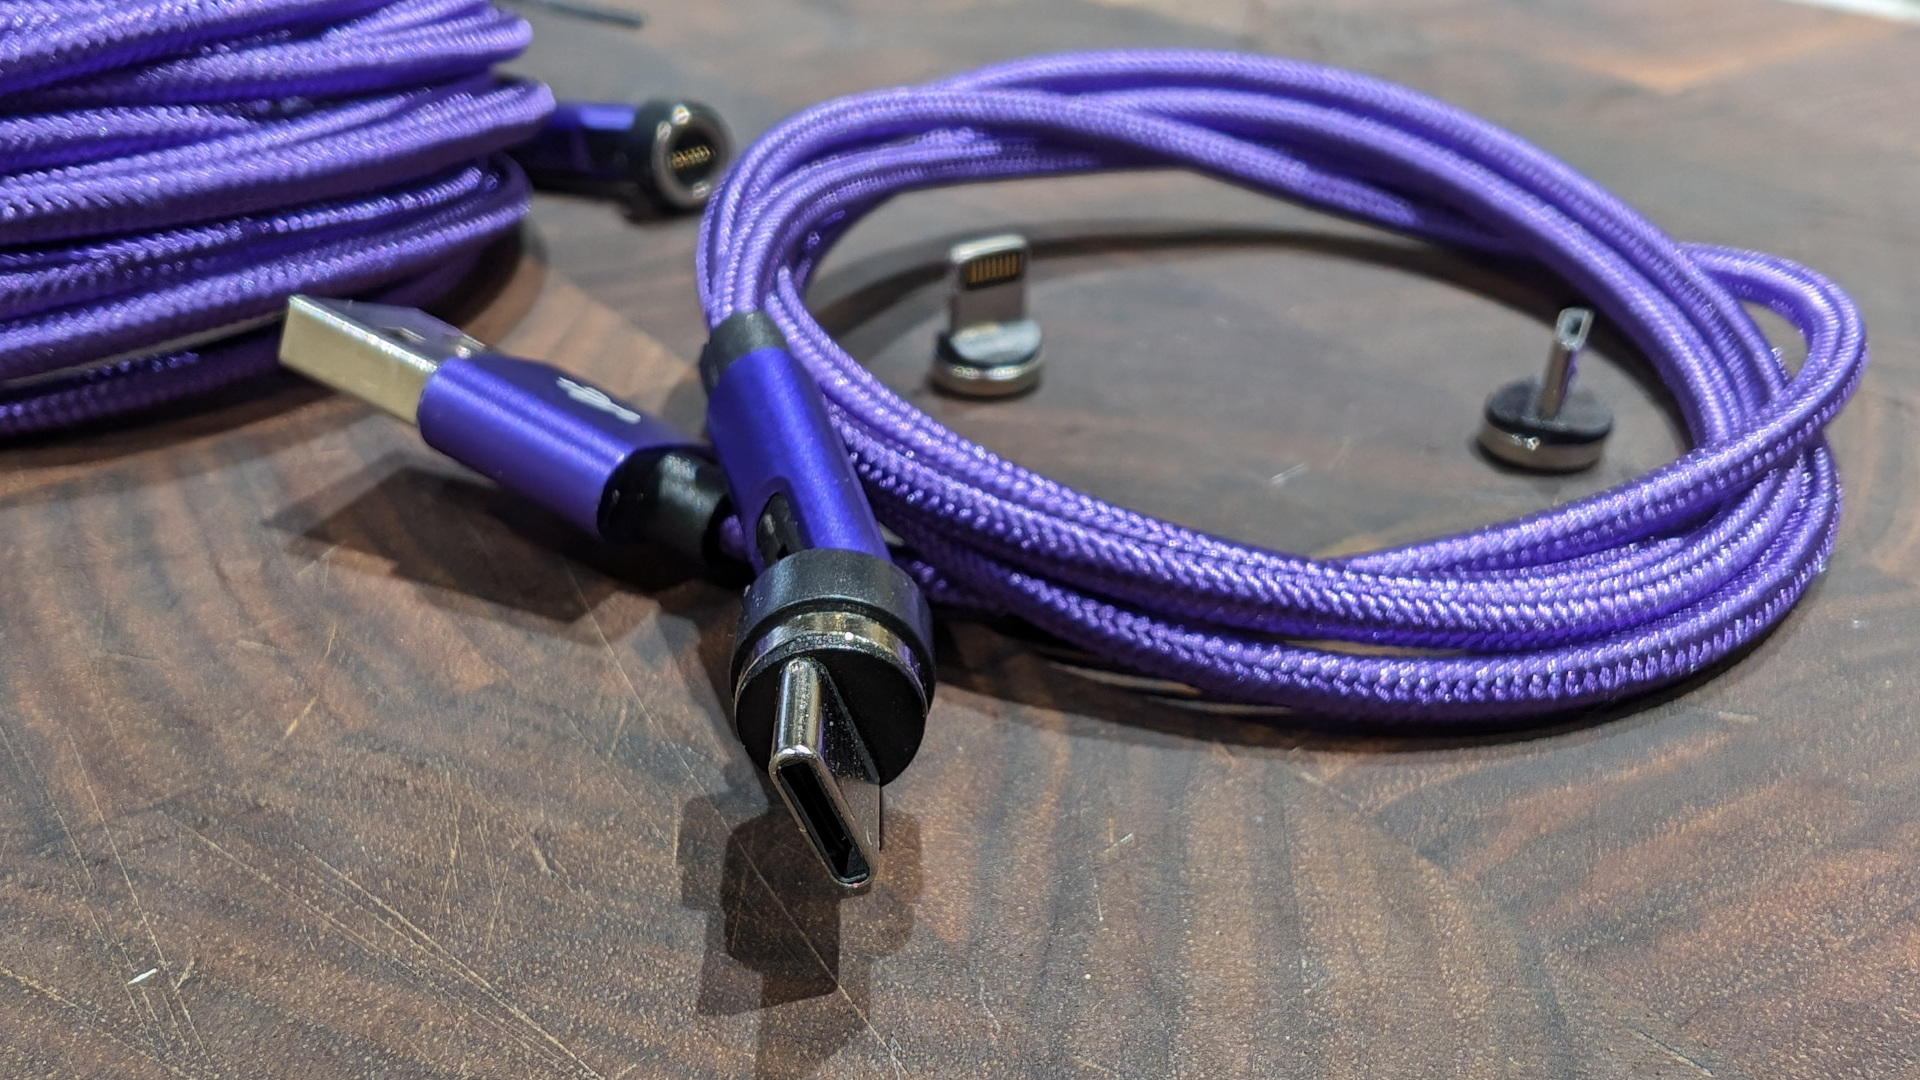 Connectique Ankndo : ce système de câbles à embouts magnétiques pourrait simplifier votre quotidien